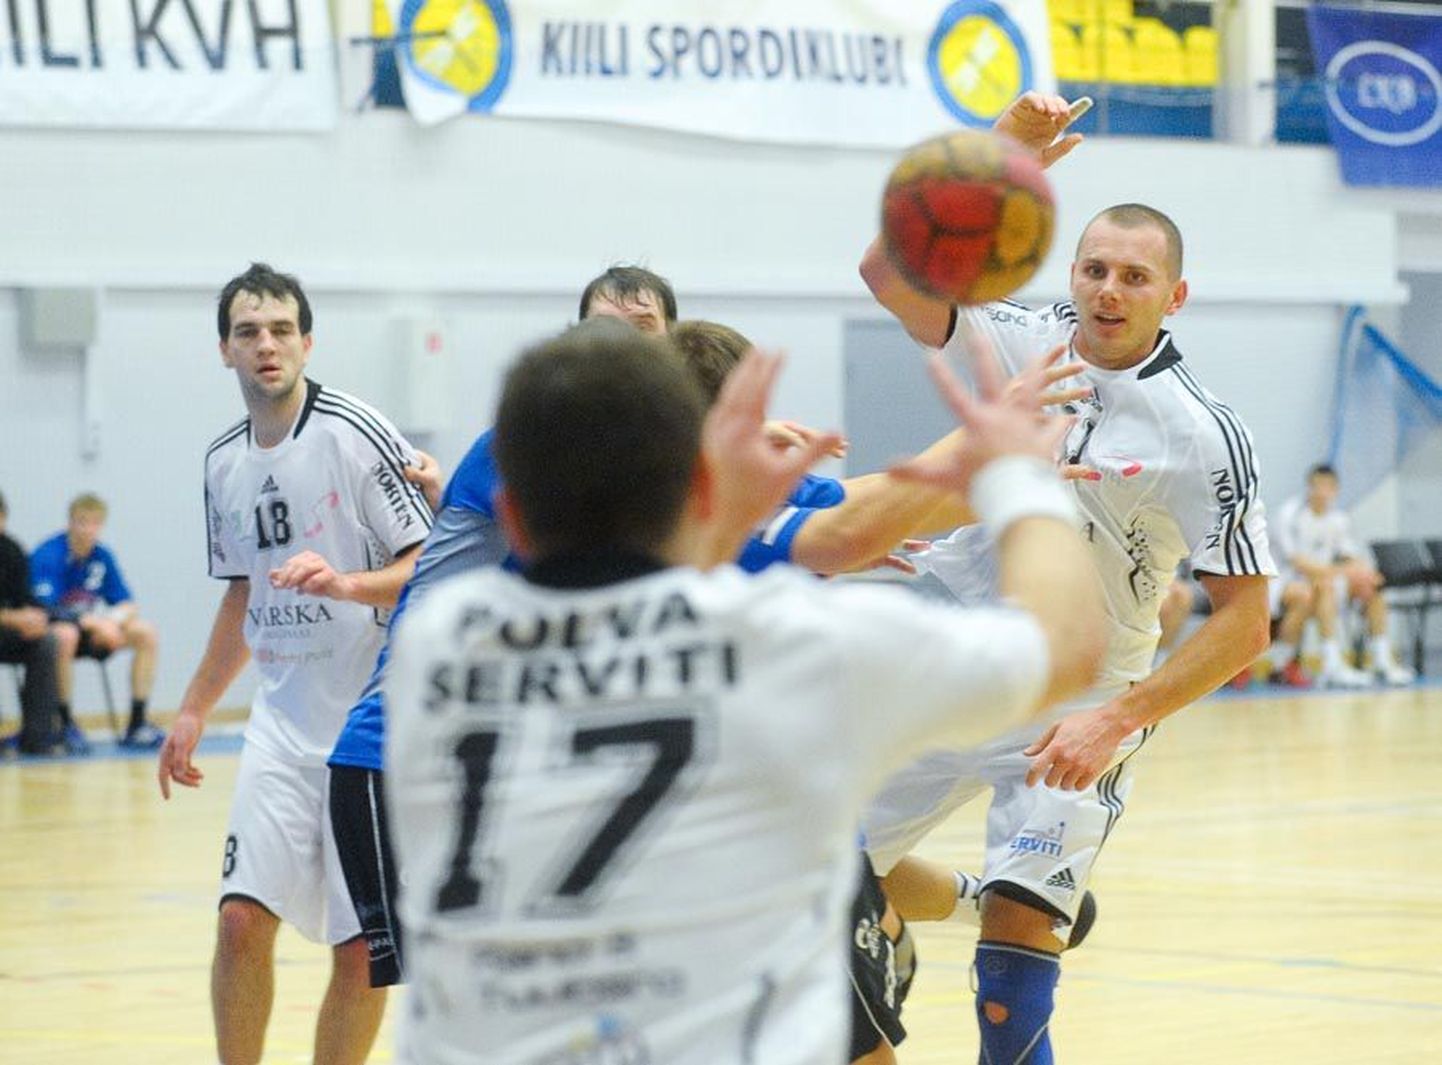 Põlva Serviti juhib Viljandi vastu poolfinaalseeriat 2:0.